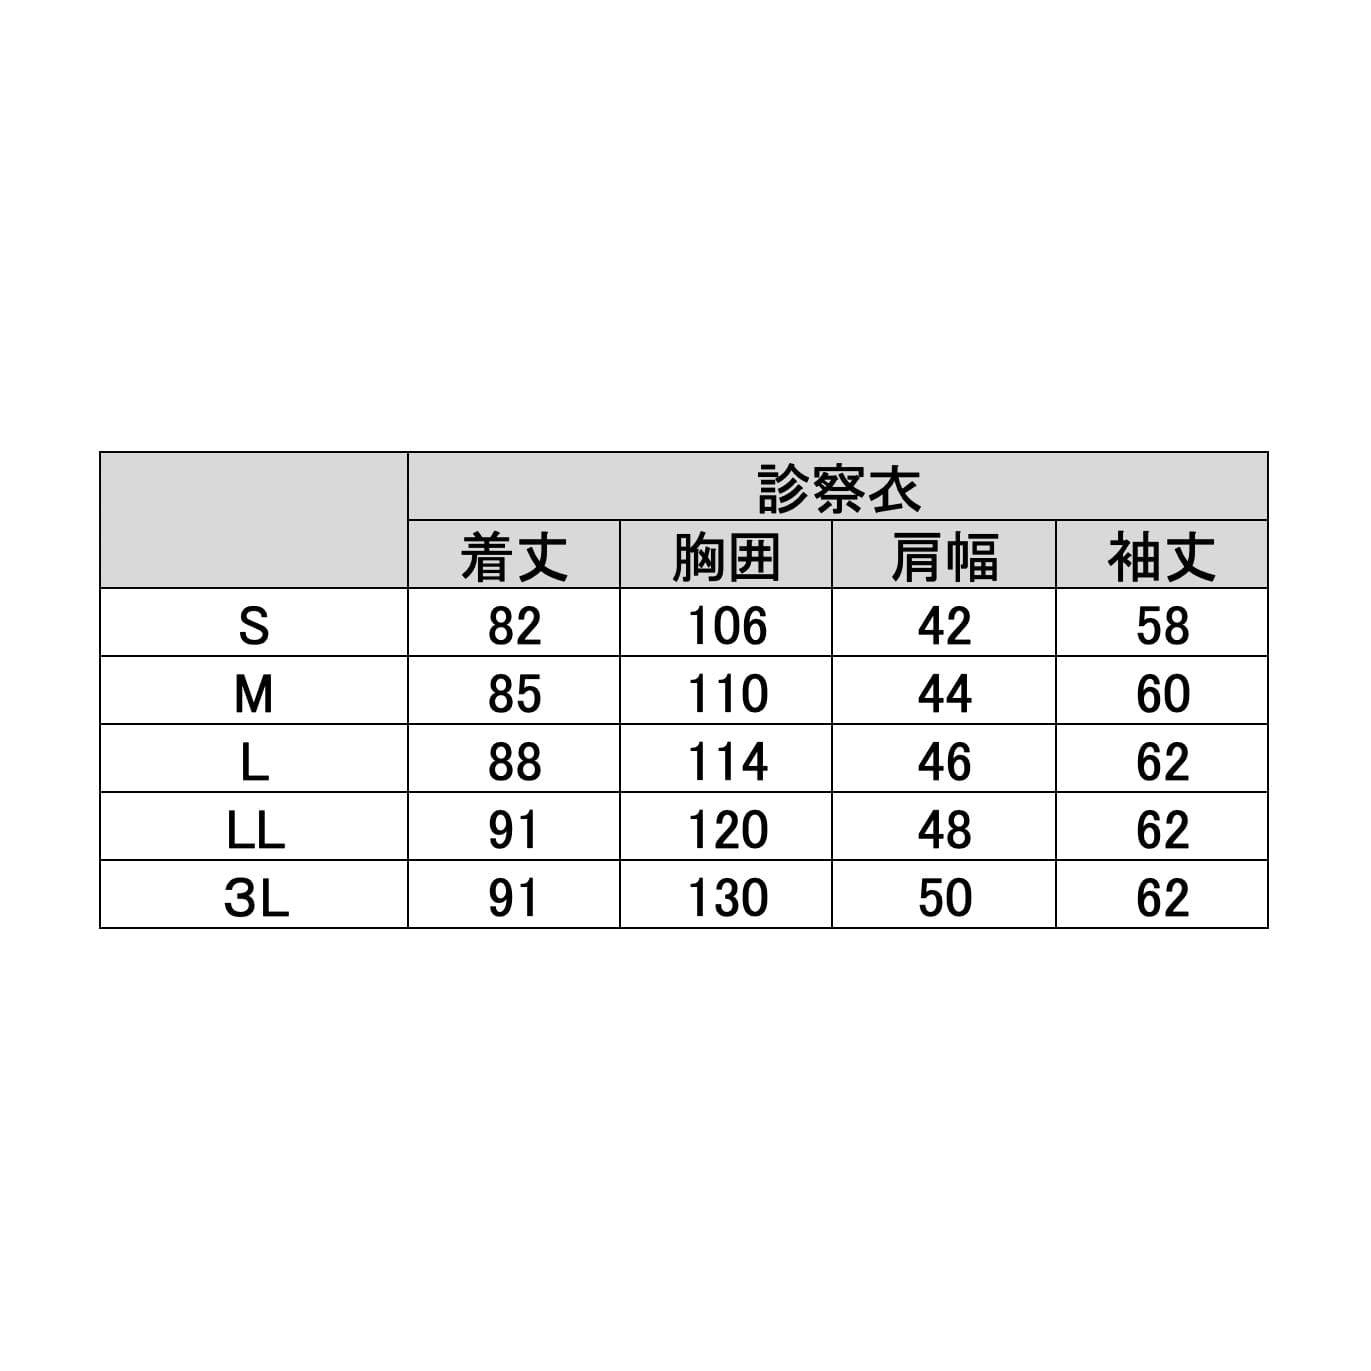 メンズ診察衣　KZN113-40　3L　ホワイト３Ｌ【ＫＡＺＥＮ】(KZN113-40)(24-7017-00-05)